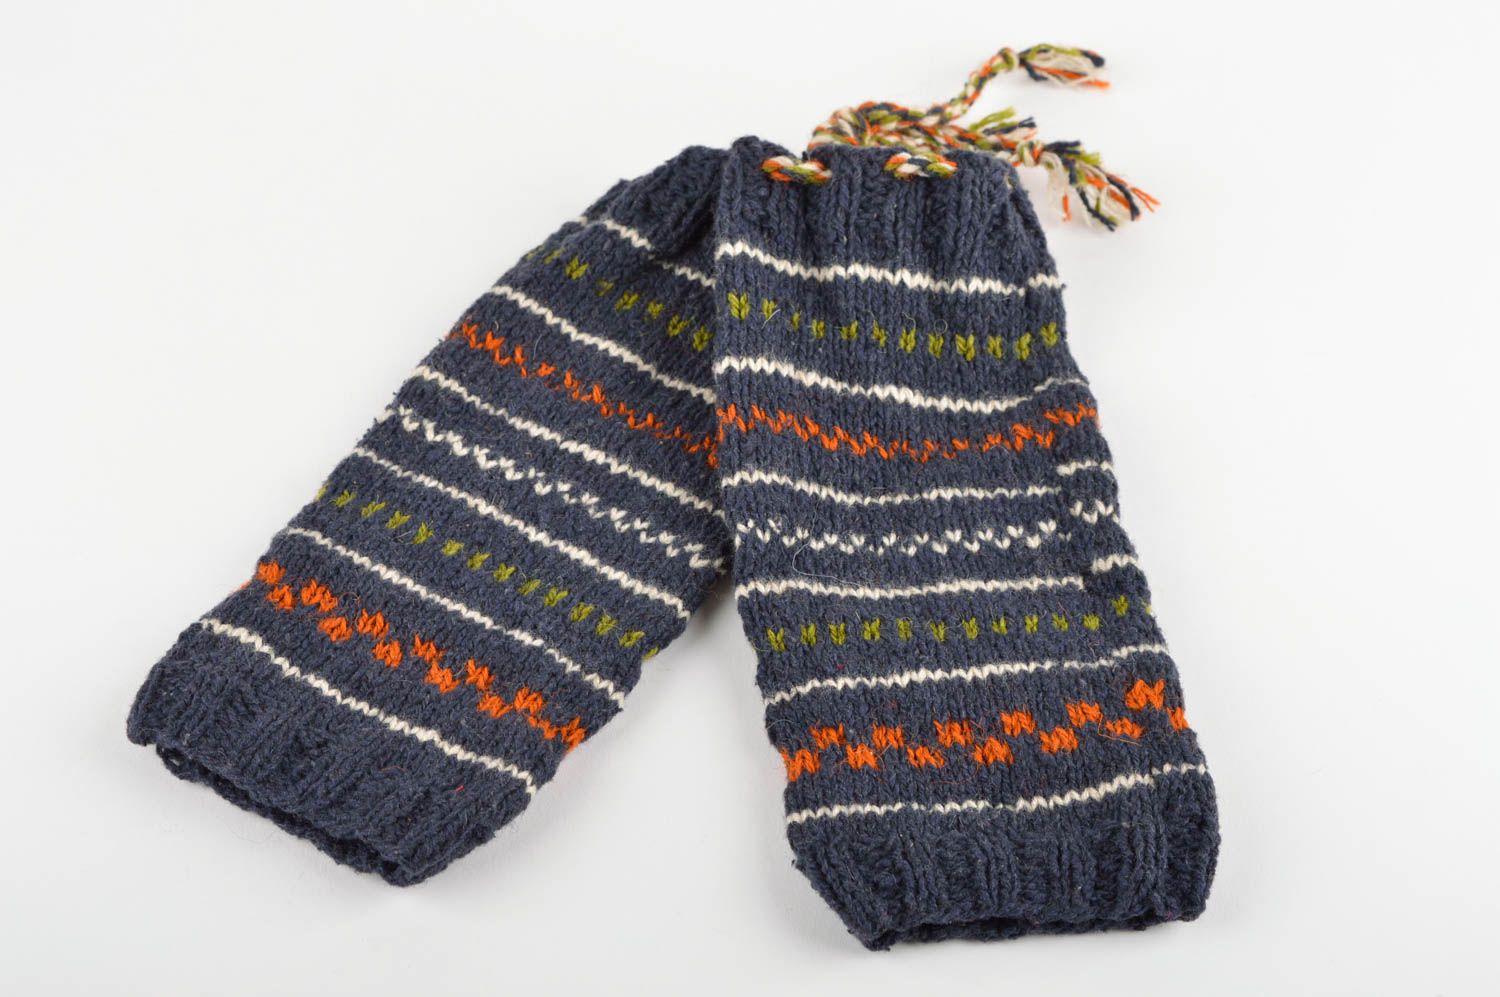 Handmade knitted socks warm woolen winter socks winter accessories for women photo 2